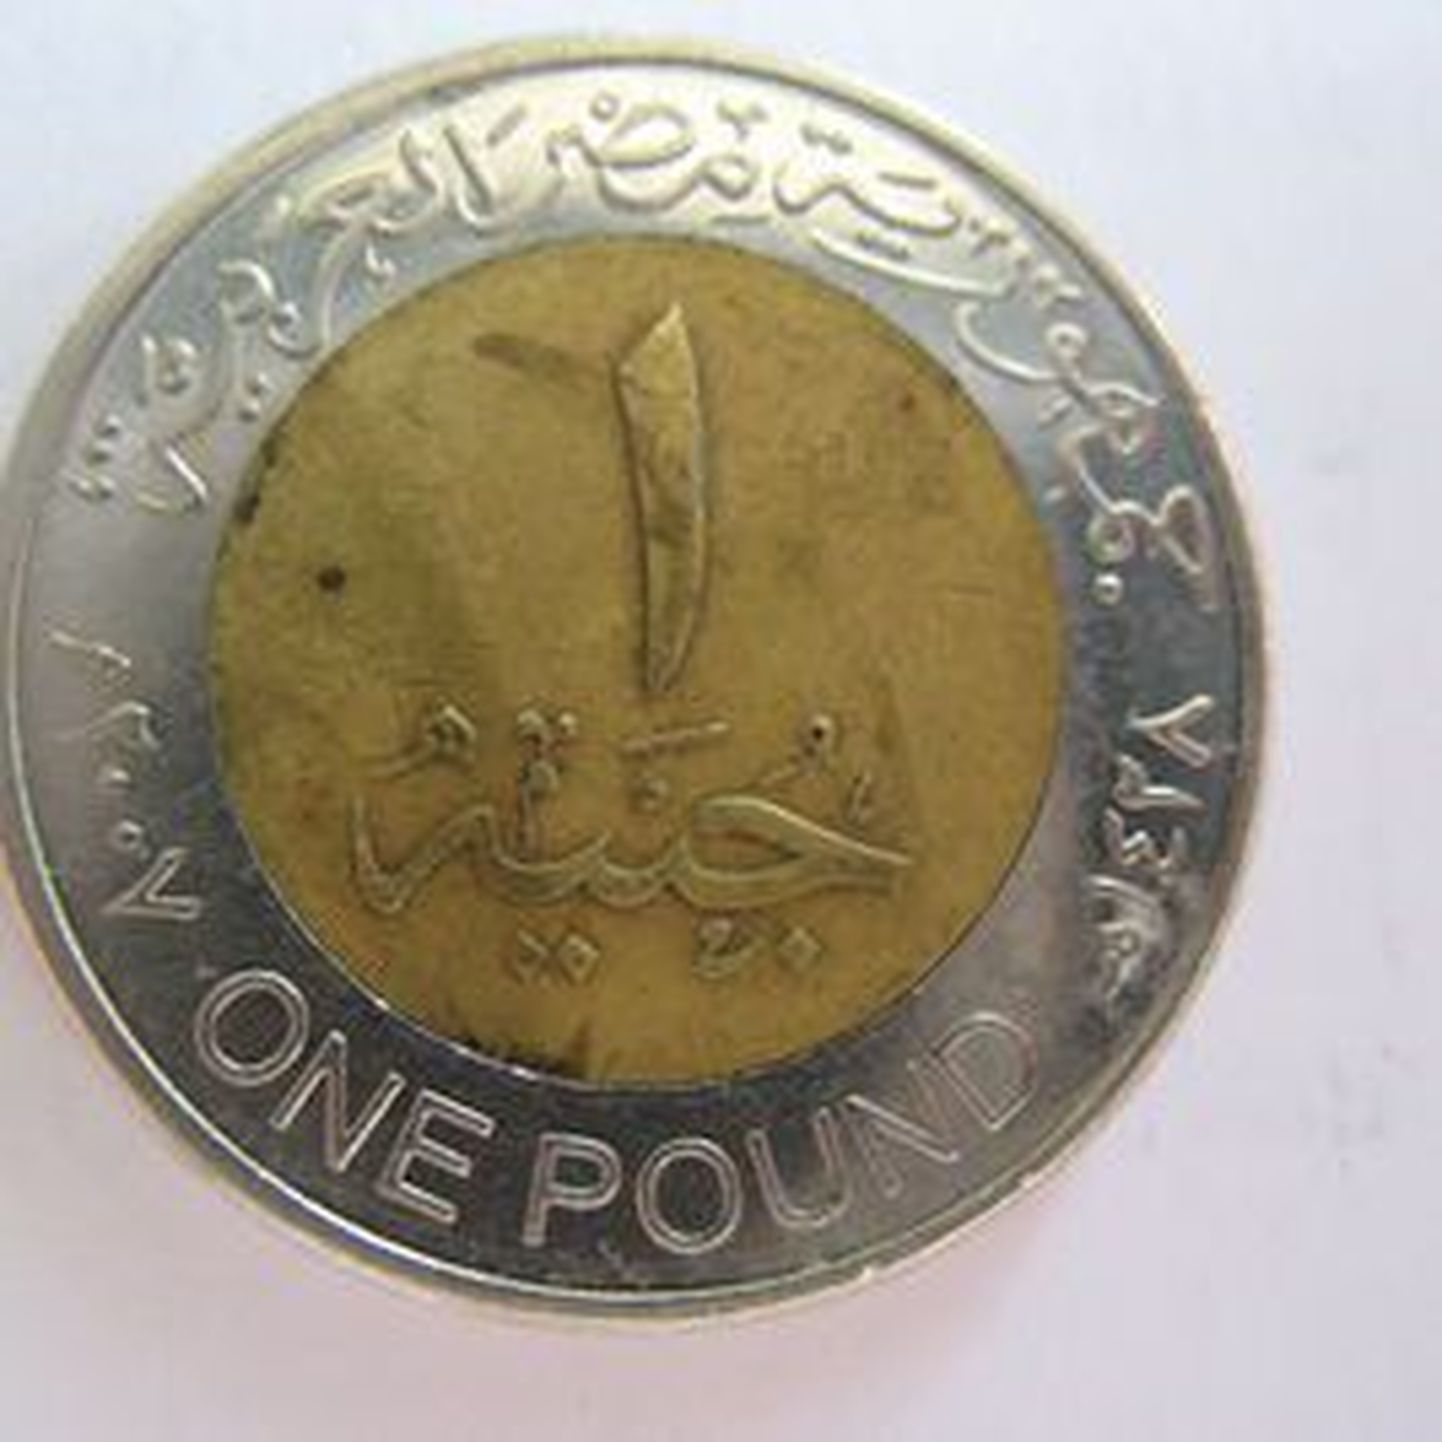 Egiptuse münt, mille tasuti peale euro tulekut ühes Prisma peremarketis.